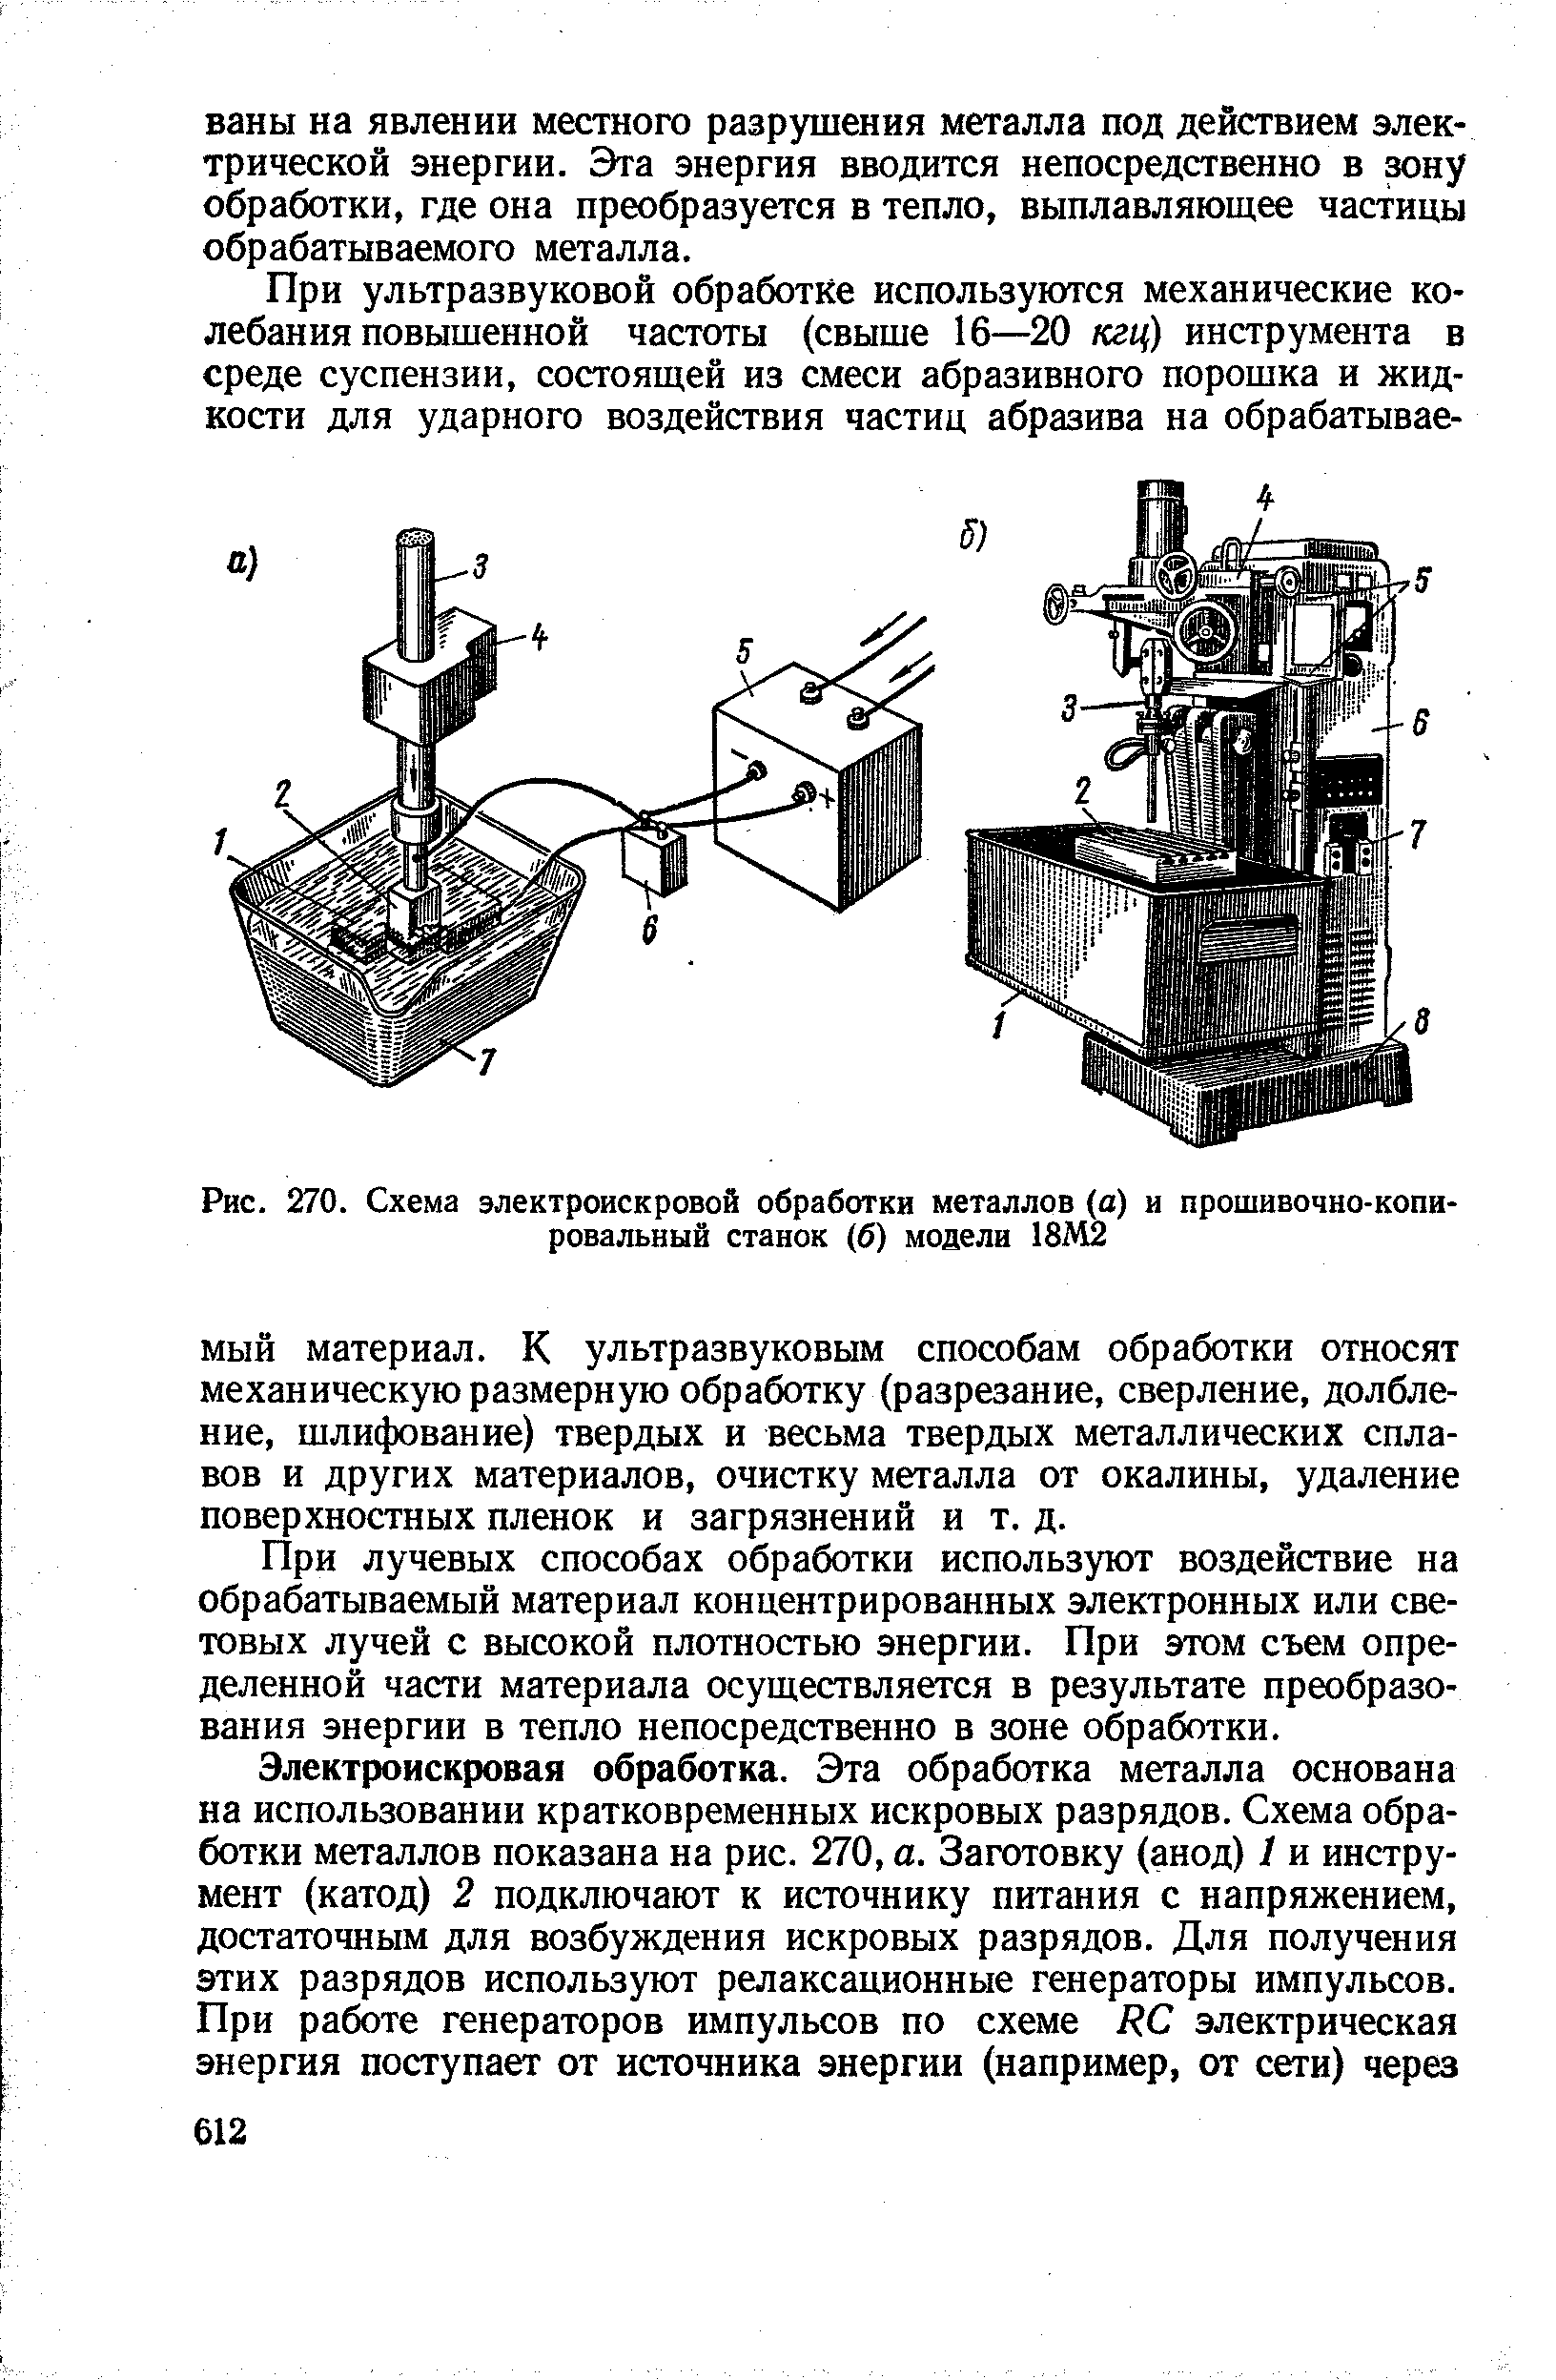 Рис. 270. Схема электроискровой обработки металлов (а) и прошивочно-<a href="/info/187075">копировальный станок</a> (б) модели 18Д12
